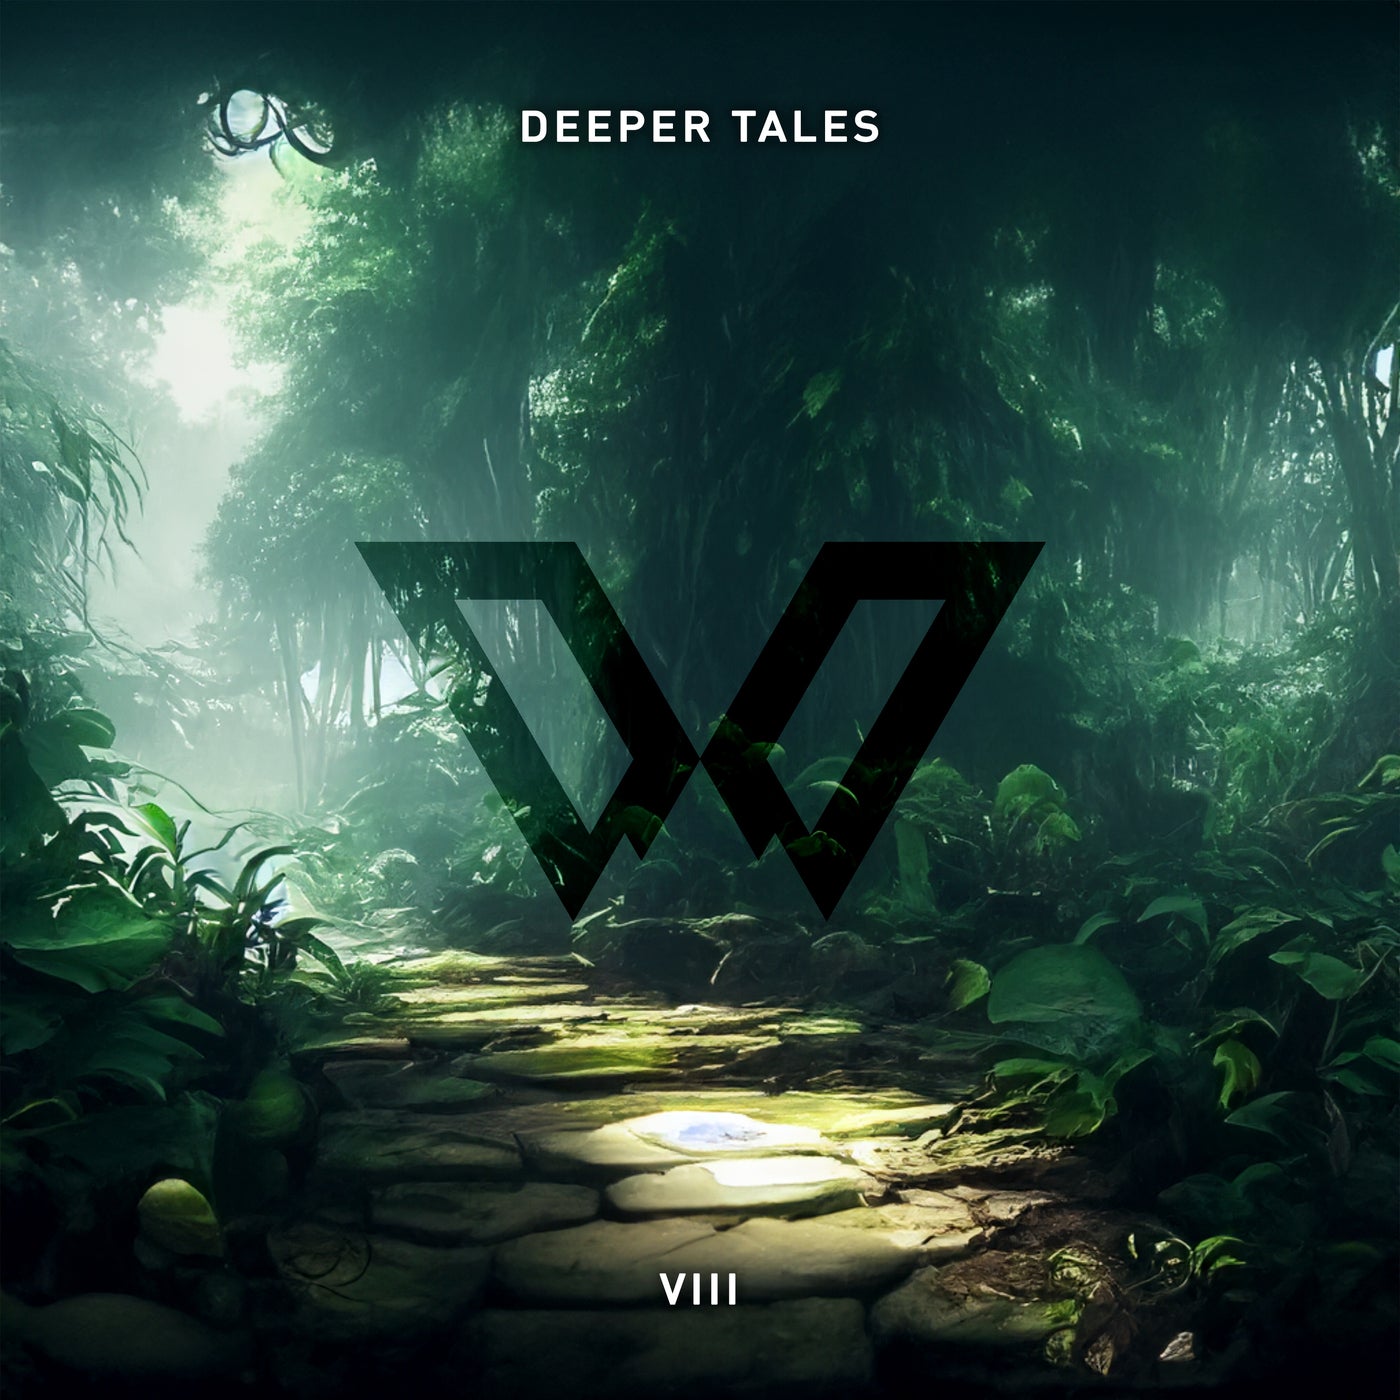 Deeper Tales VIII